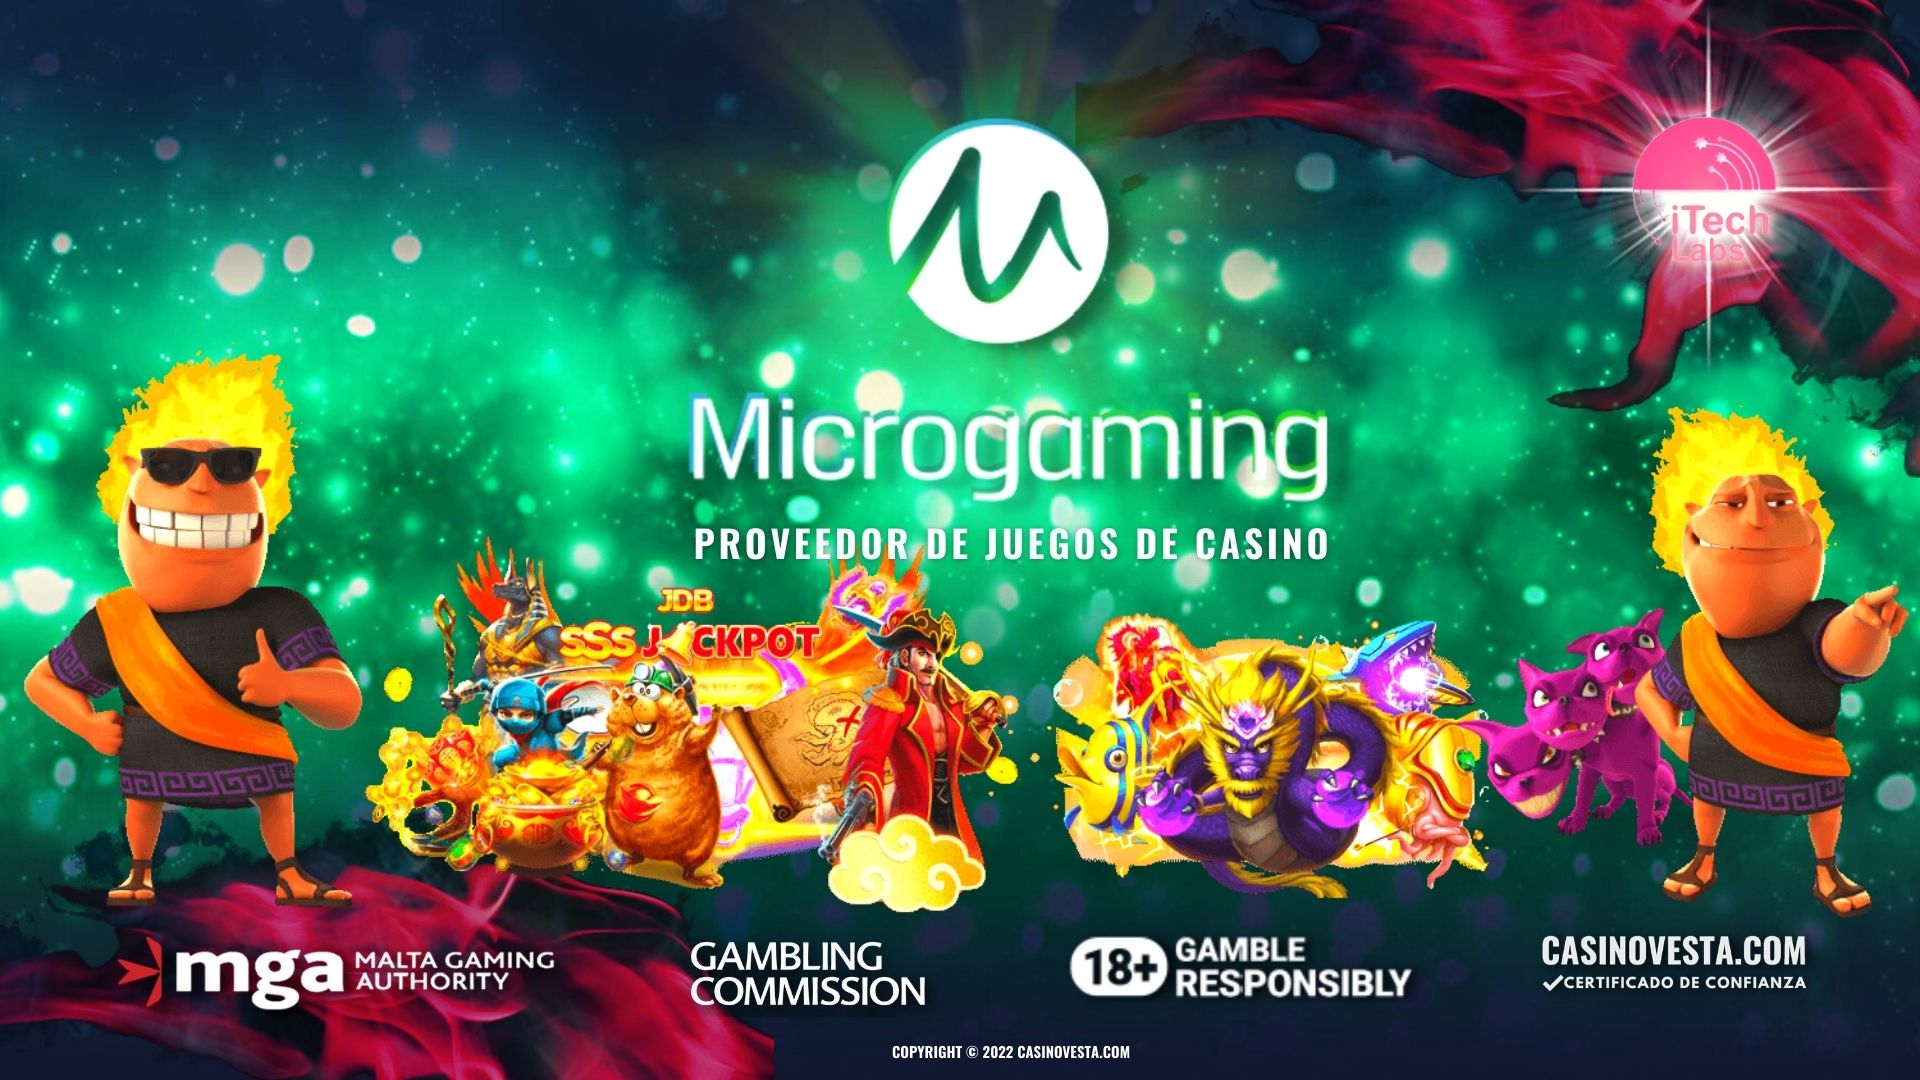 Microgaming Proveedor de Juegos de Casino